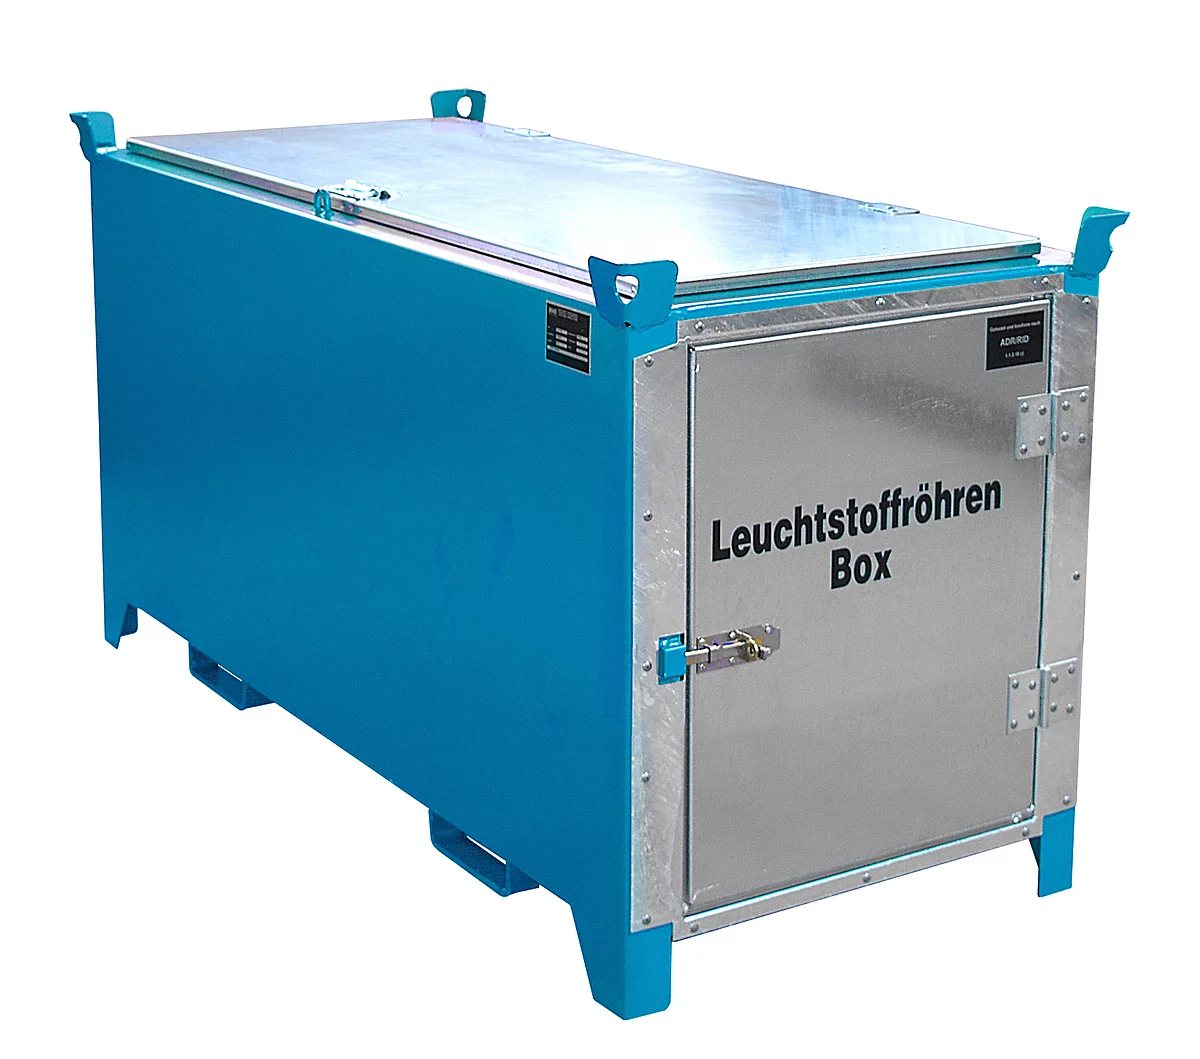 Leuchtstoffröhrenbox BAUER SL-D 200, Stahlblech, unterfahrbar, abschließbar, Tür/Deckel verzinkt, B 2100 x T 770 x H 975 mm, blau